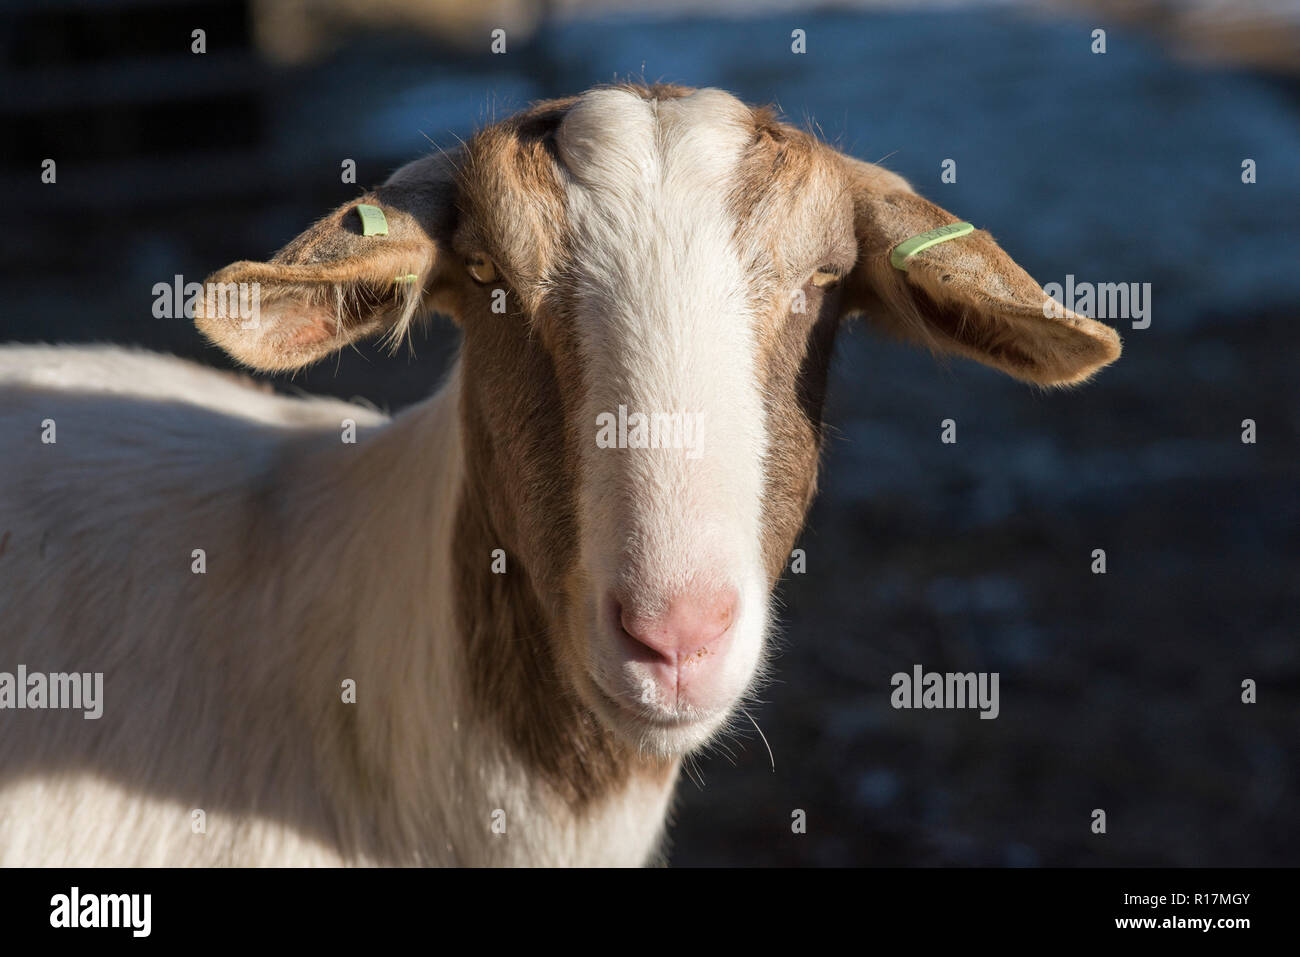 La chèvre Boer nounou avec les marques auriculaires, les descendants de chèvres laitières maintenu à un animal, Berkshire, Février Banque D'Images